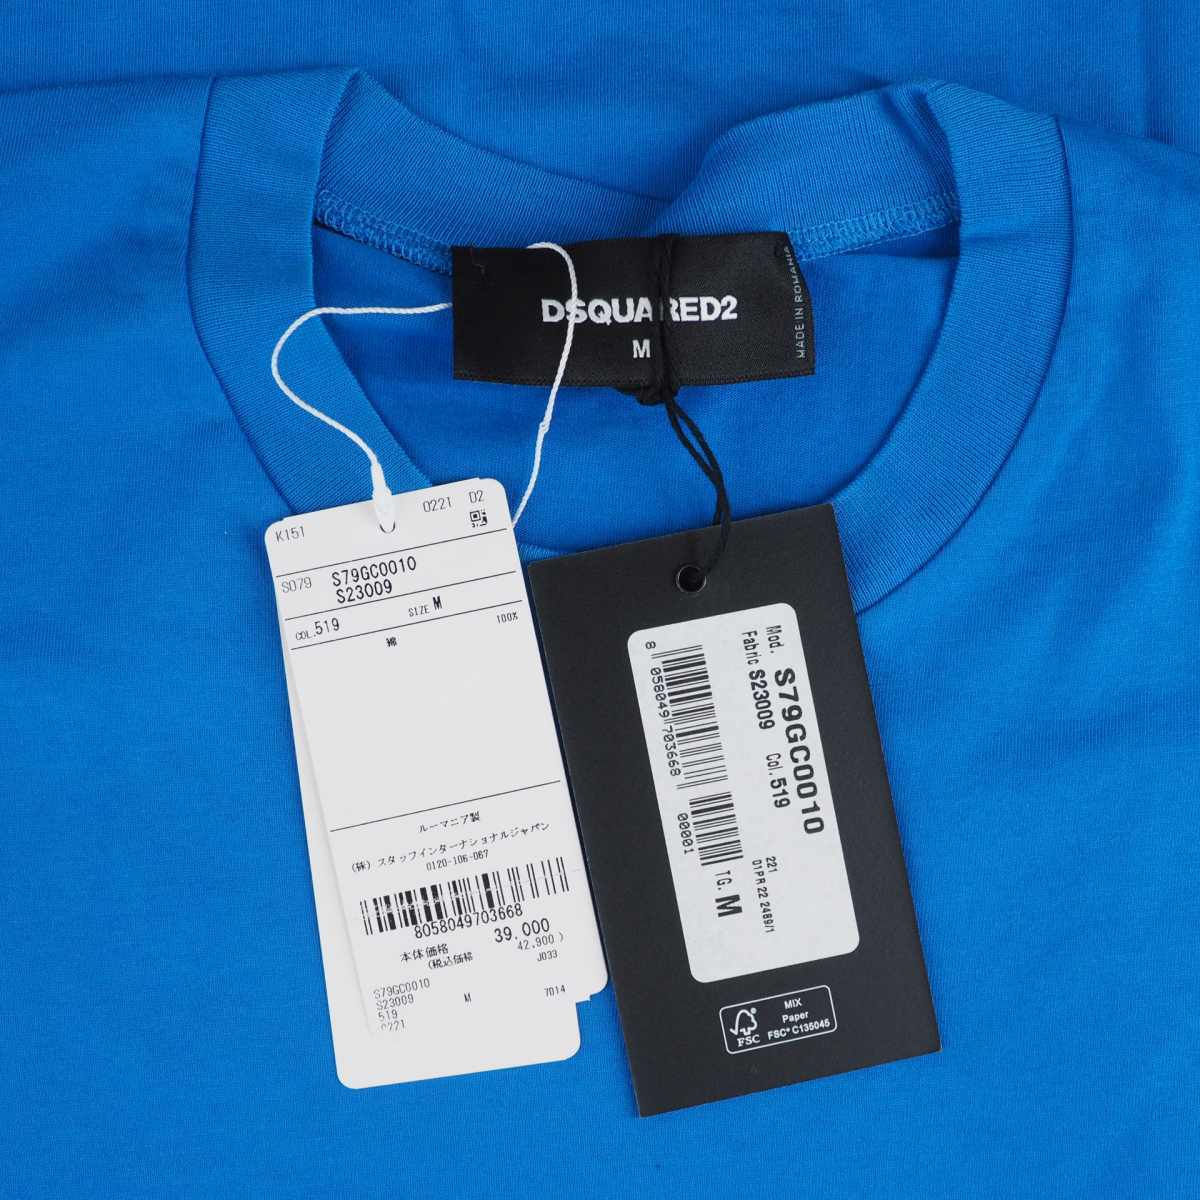 ディースクエアード DSQUARED2 22SS Icon Mini Logo Tシャツ カットソー 半袖 クルーネック M ブルー 青 S79GC0010 国内正規 メンズ_画像4